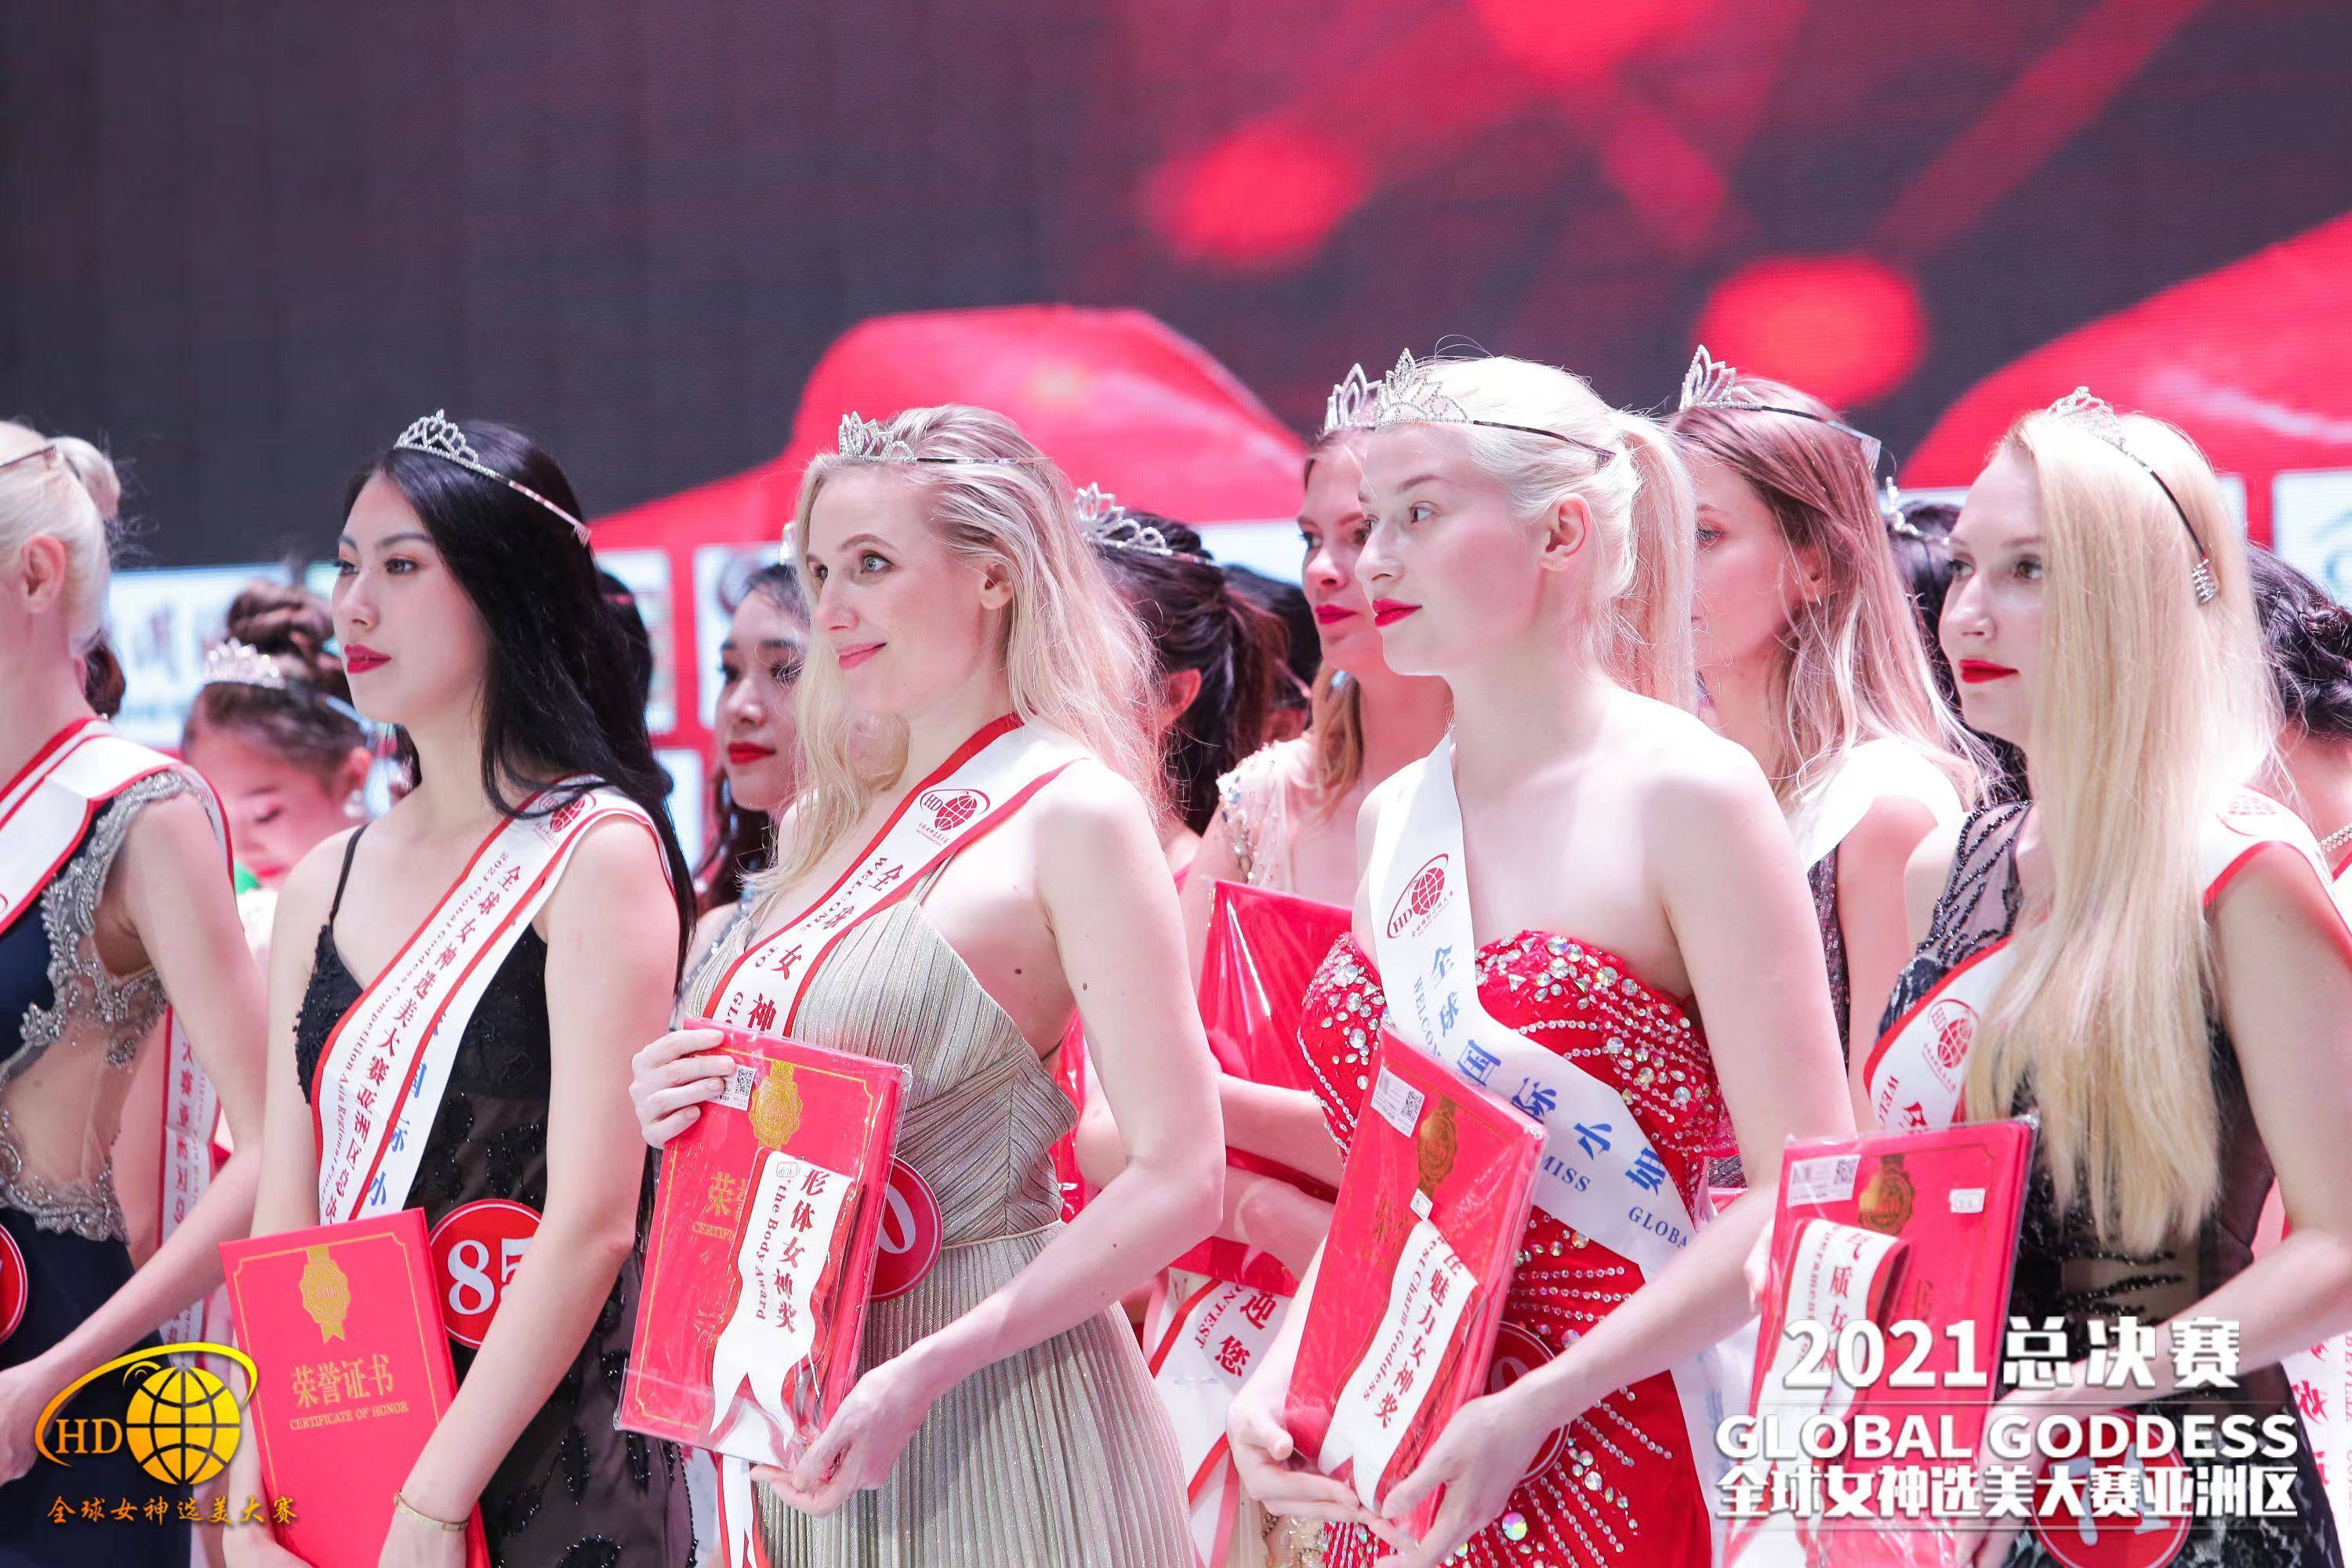 22届全球国际小姐大赛全球总决赛将于2022年11月6日隆重开幕